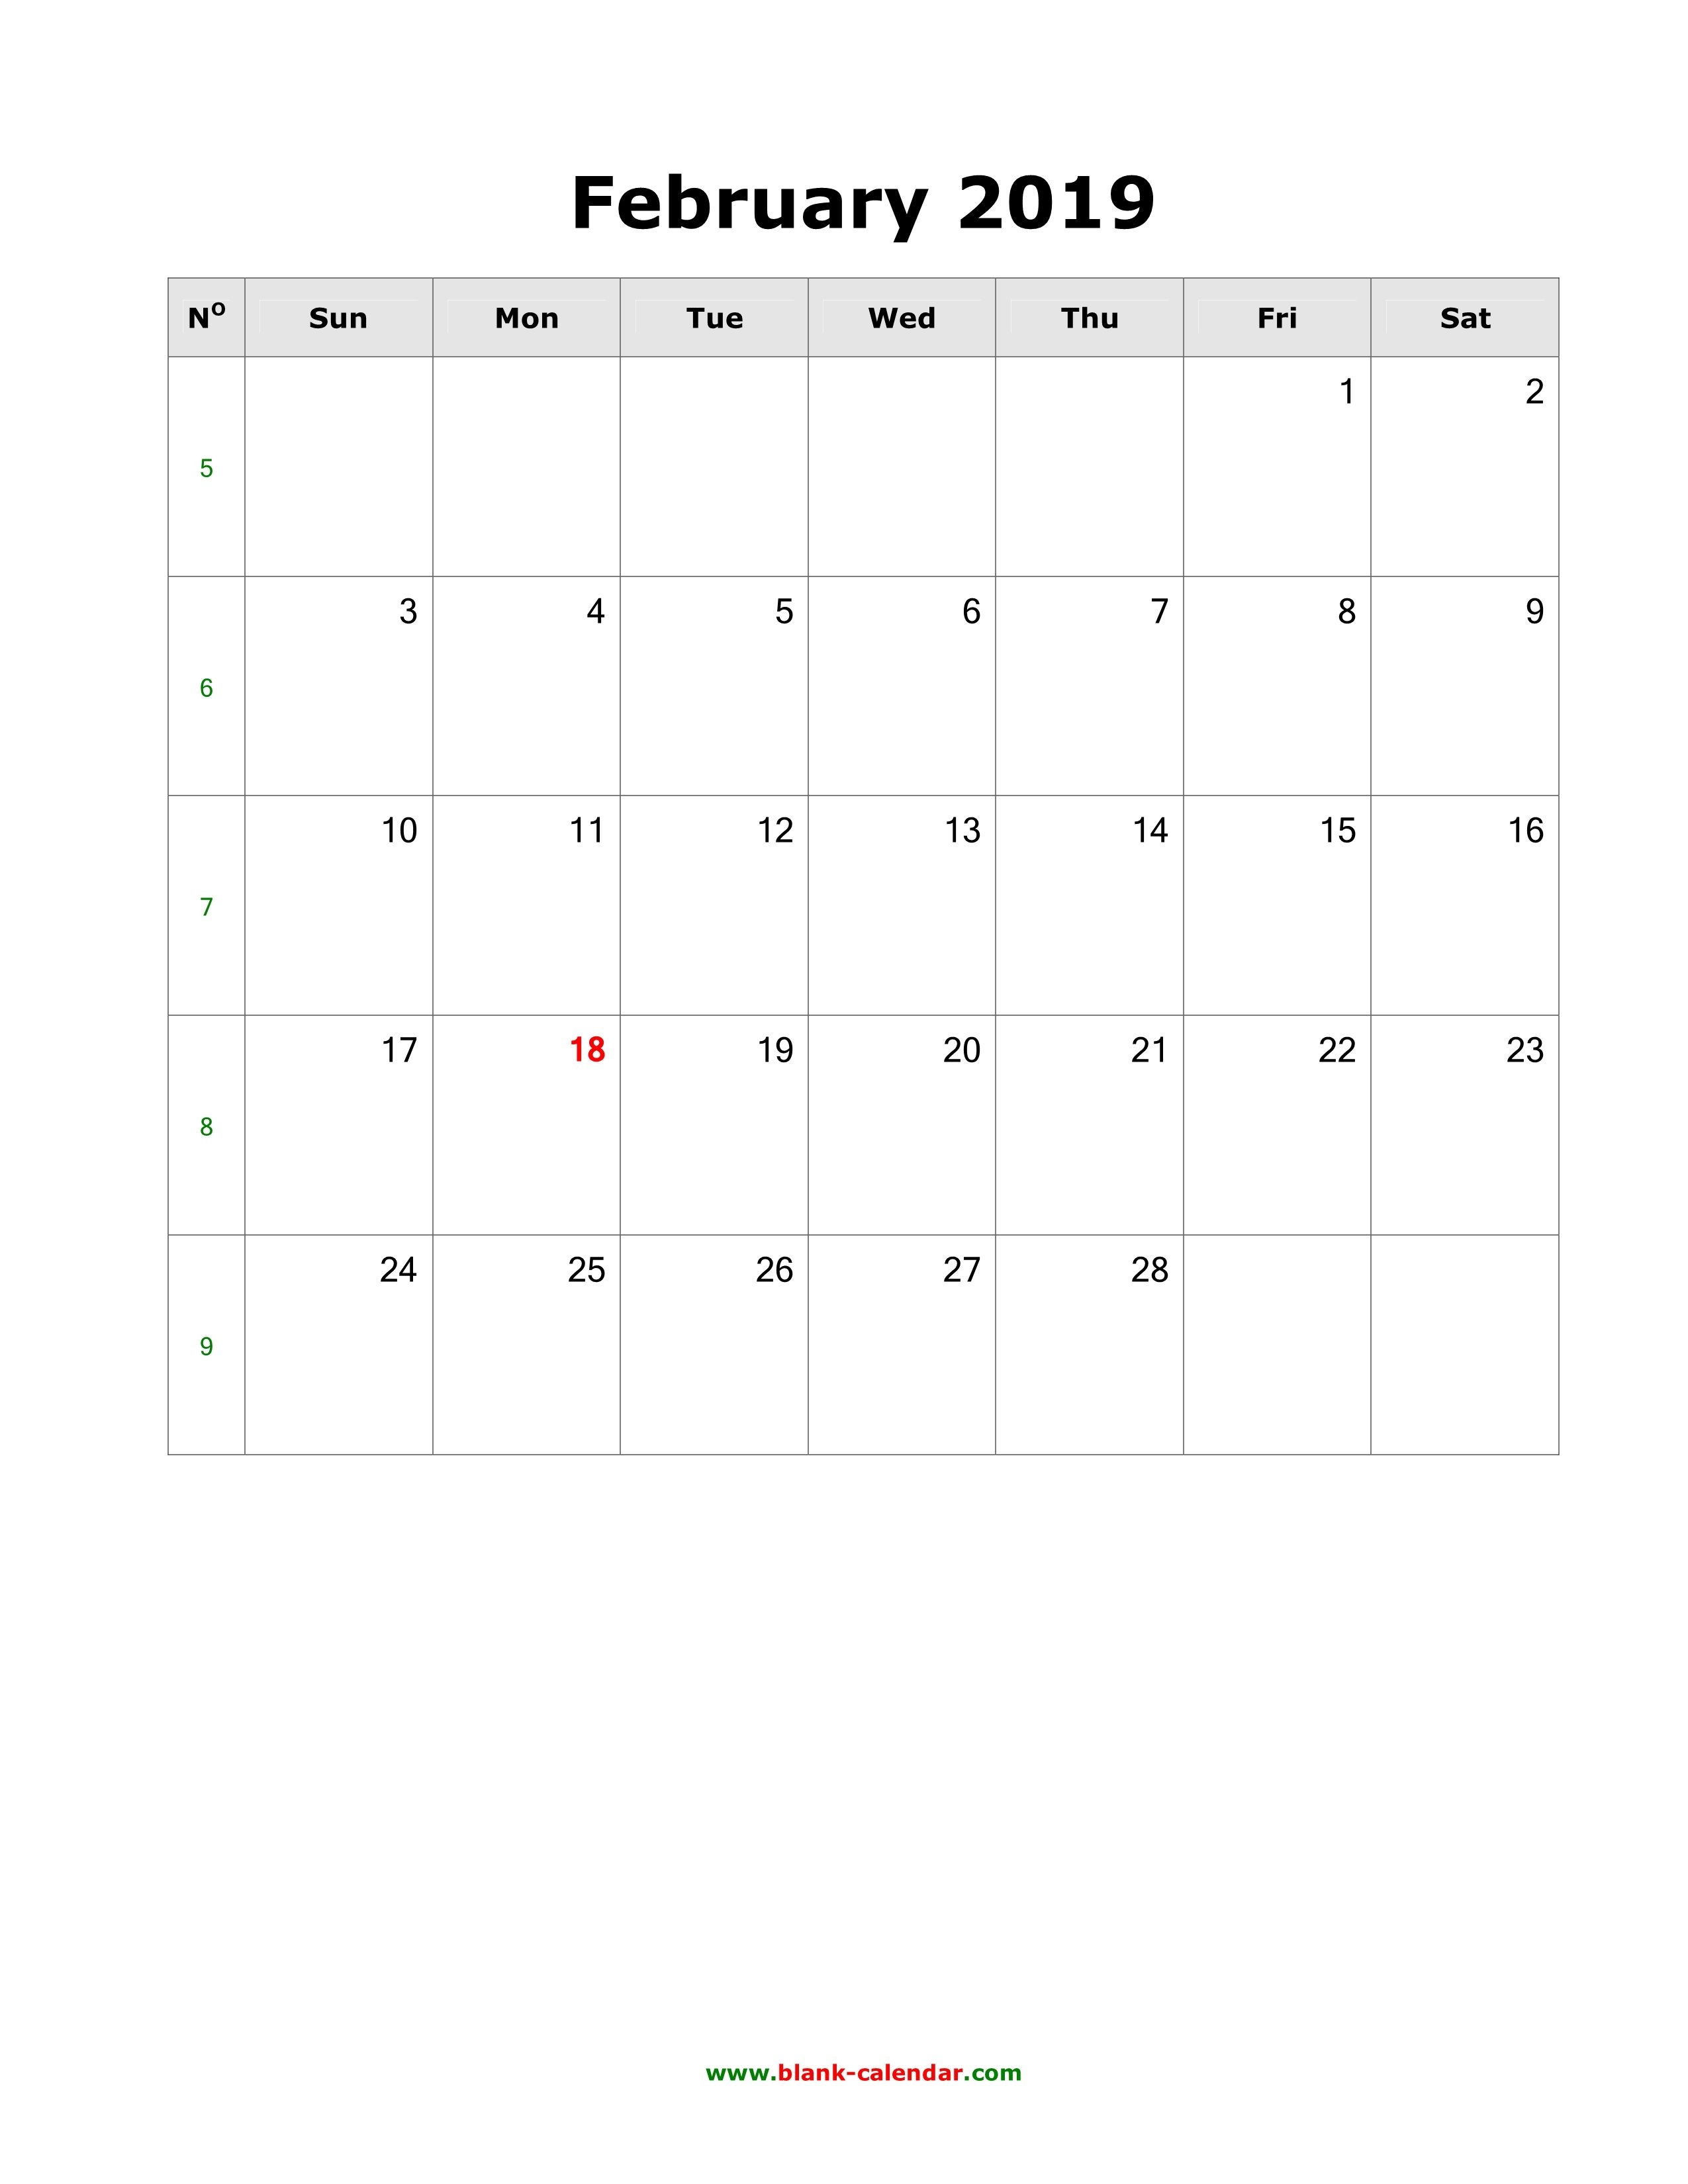 February Calendar 2019 To Do List Free February 2019 Calendar